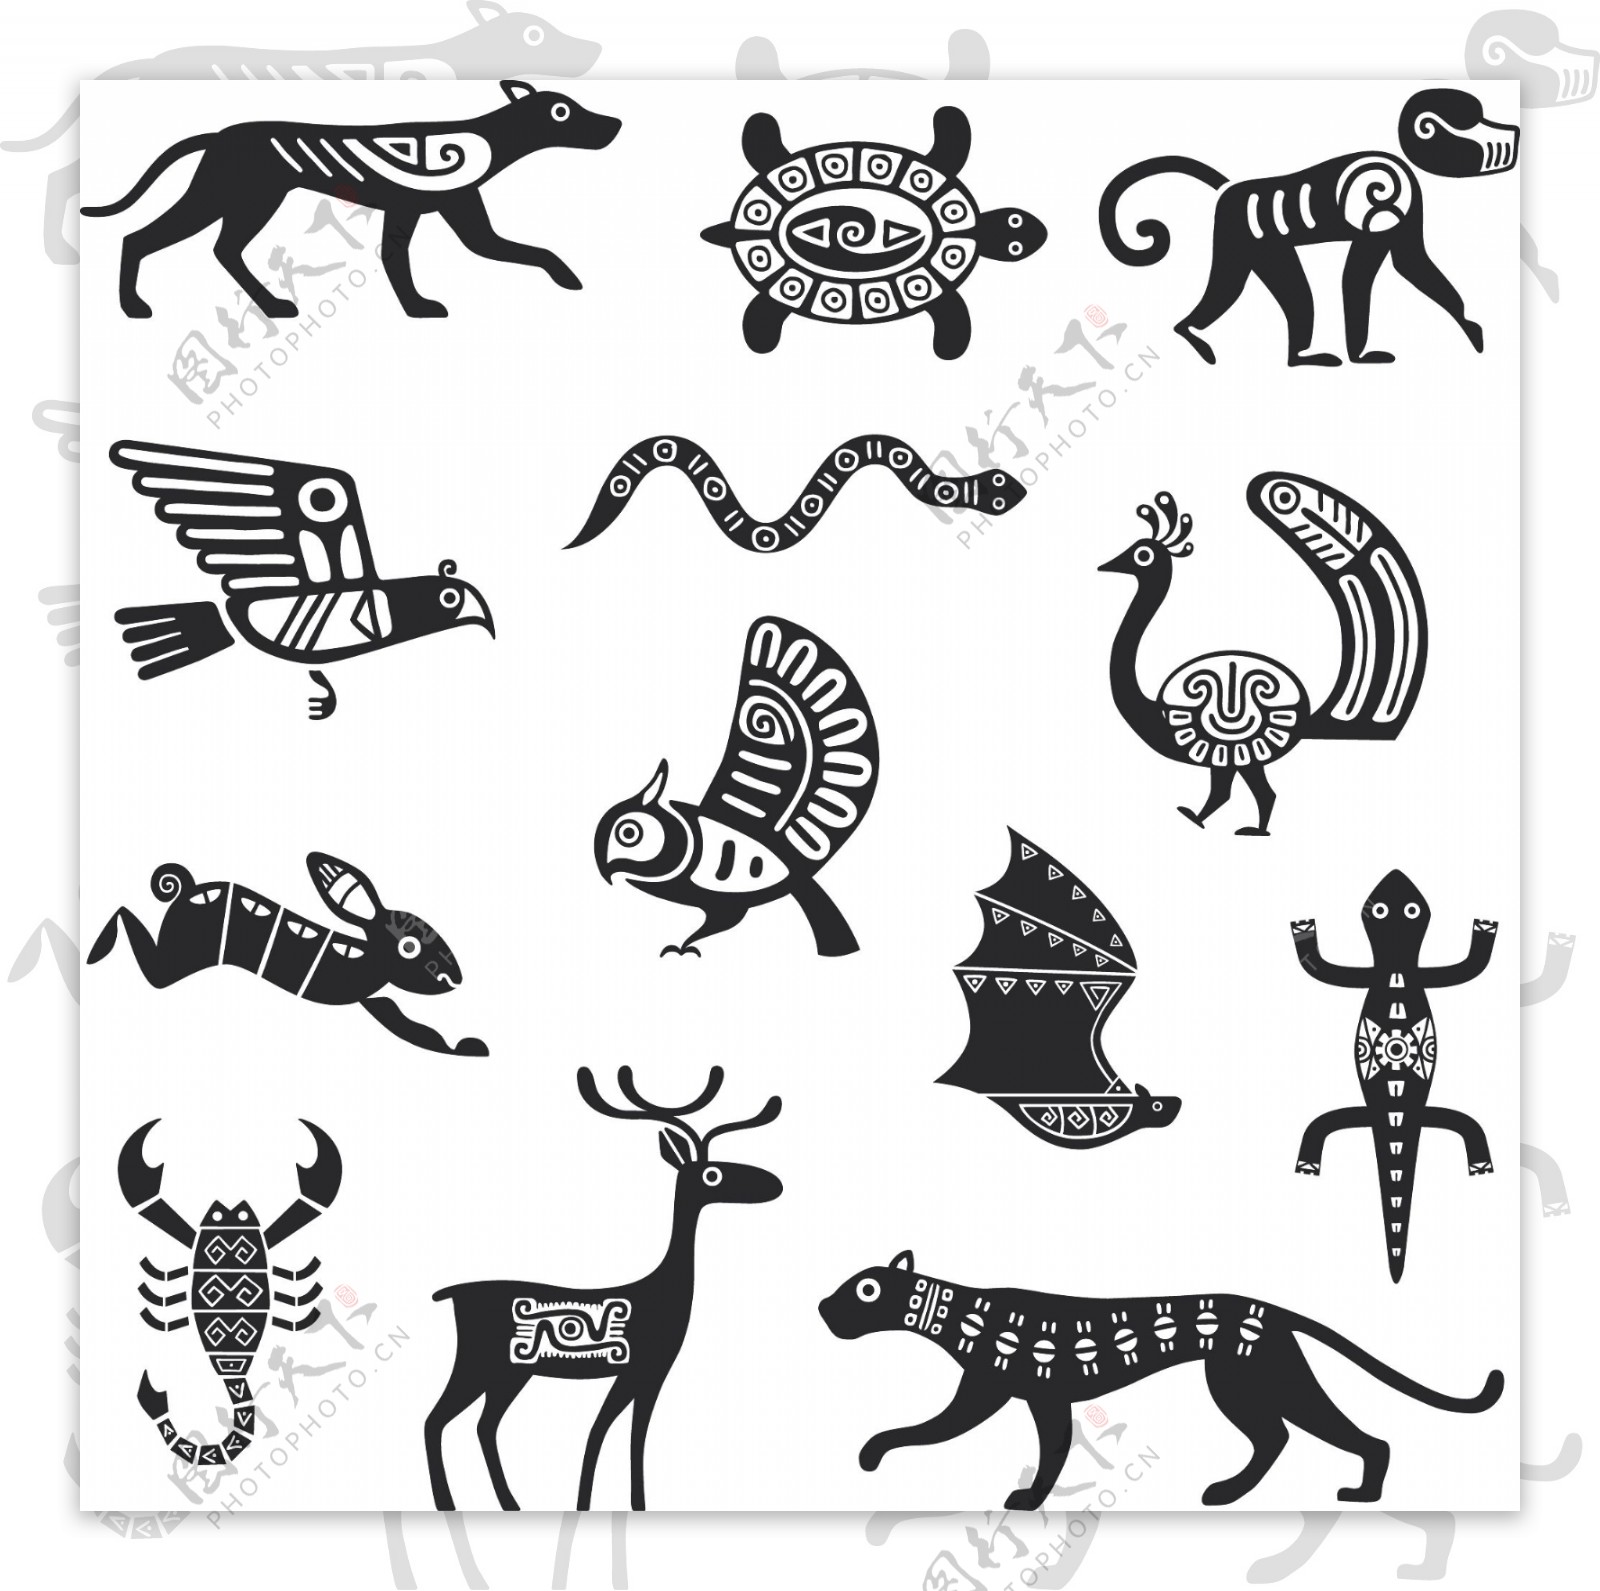 黑色动物剪纸样式纹样矢量素材